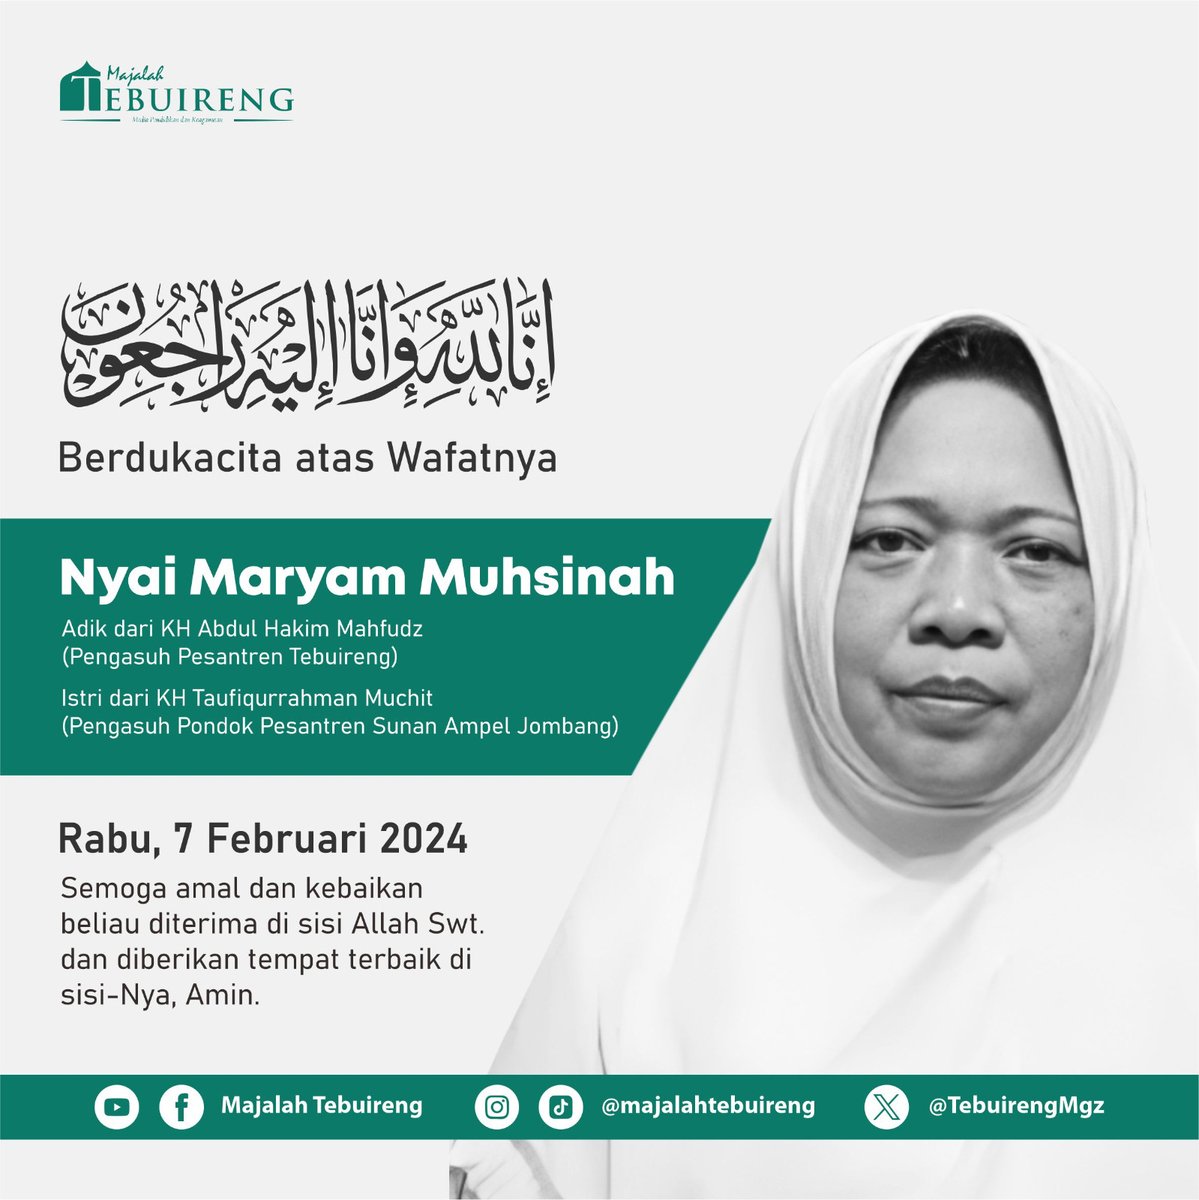 إنا لله وإنا إليه راجعون 
Pesantren Tebuireng Berduka atas Wafatnya
Ibu Nyai Maryam Muhsinah
Adik dari KH. Abdul Hakim Mahfudz (Pengasuh pondok Tebuireng)
Istri dari Taufiqurrahman Muchit
(Pengasuh pondok pesantren Sunan Ampel Jombang 

#beritaduka #wafat #pesantrentebuireng